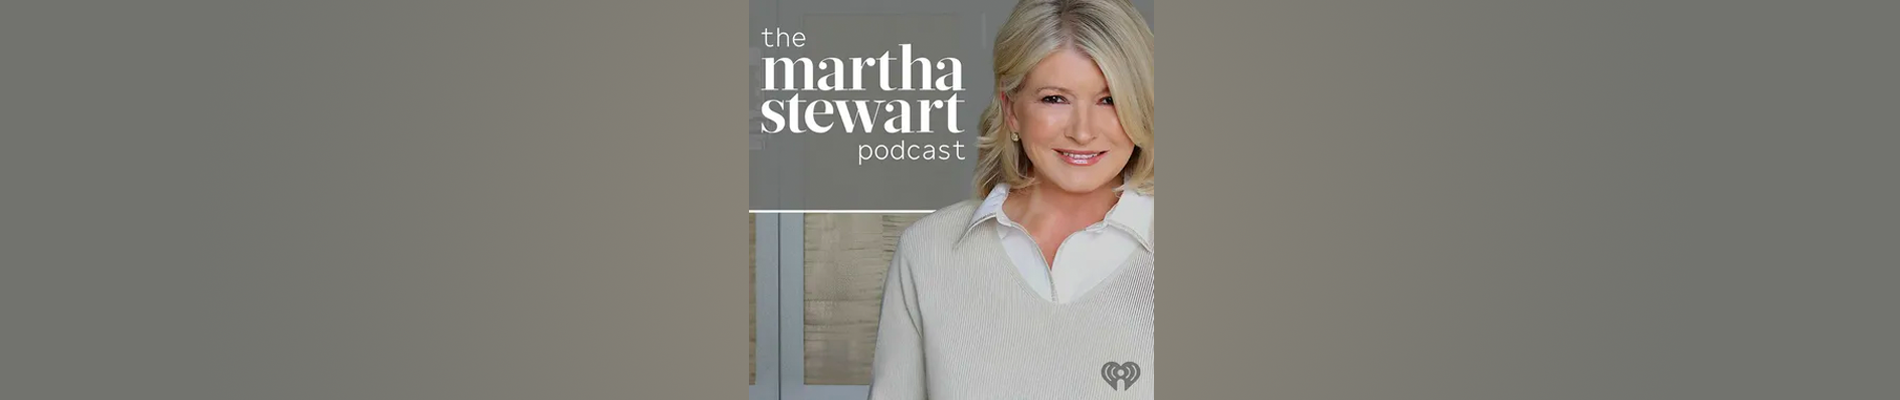 Listen to the Martha Stewart Podcast Trailer